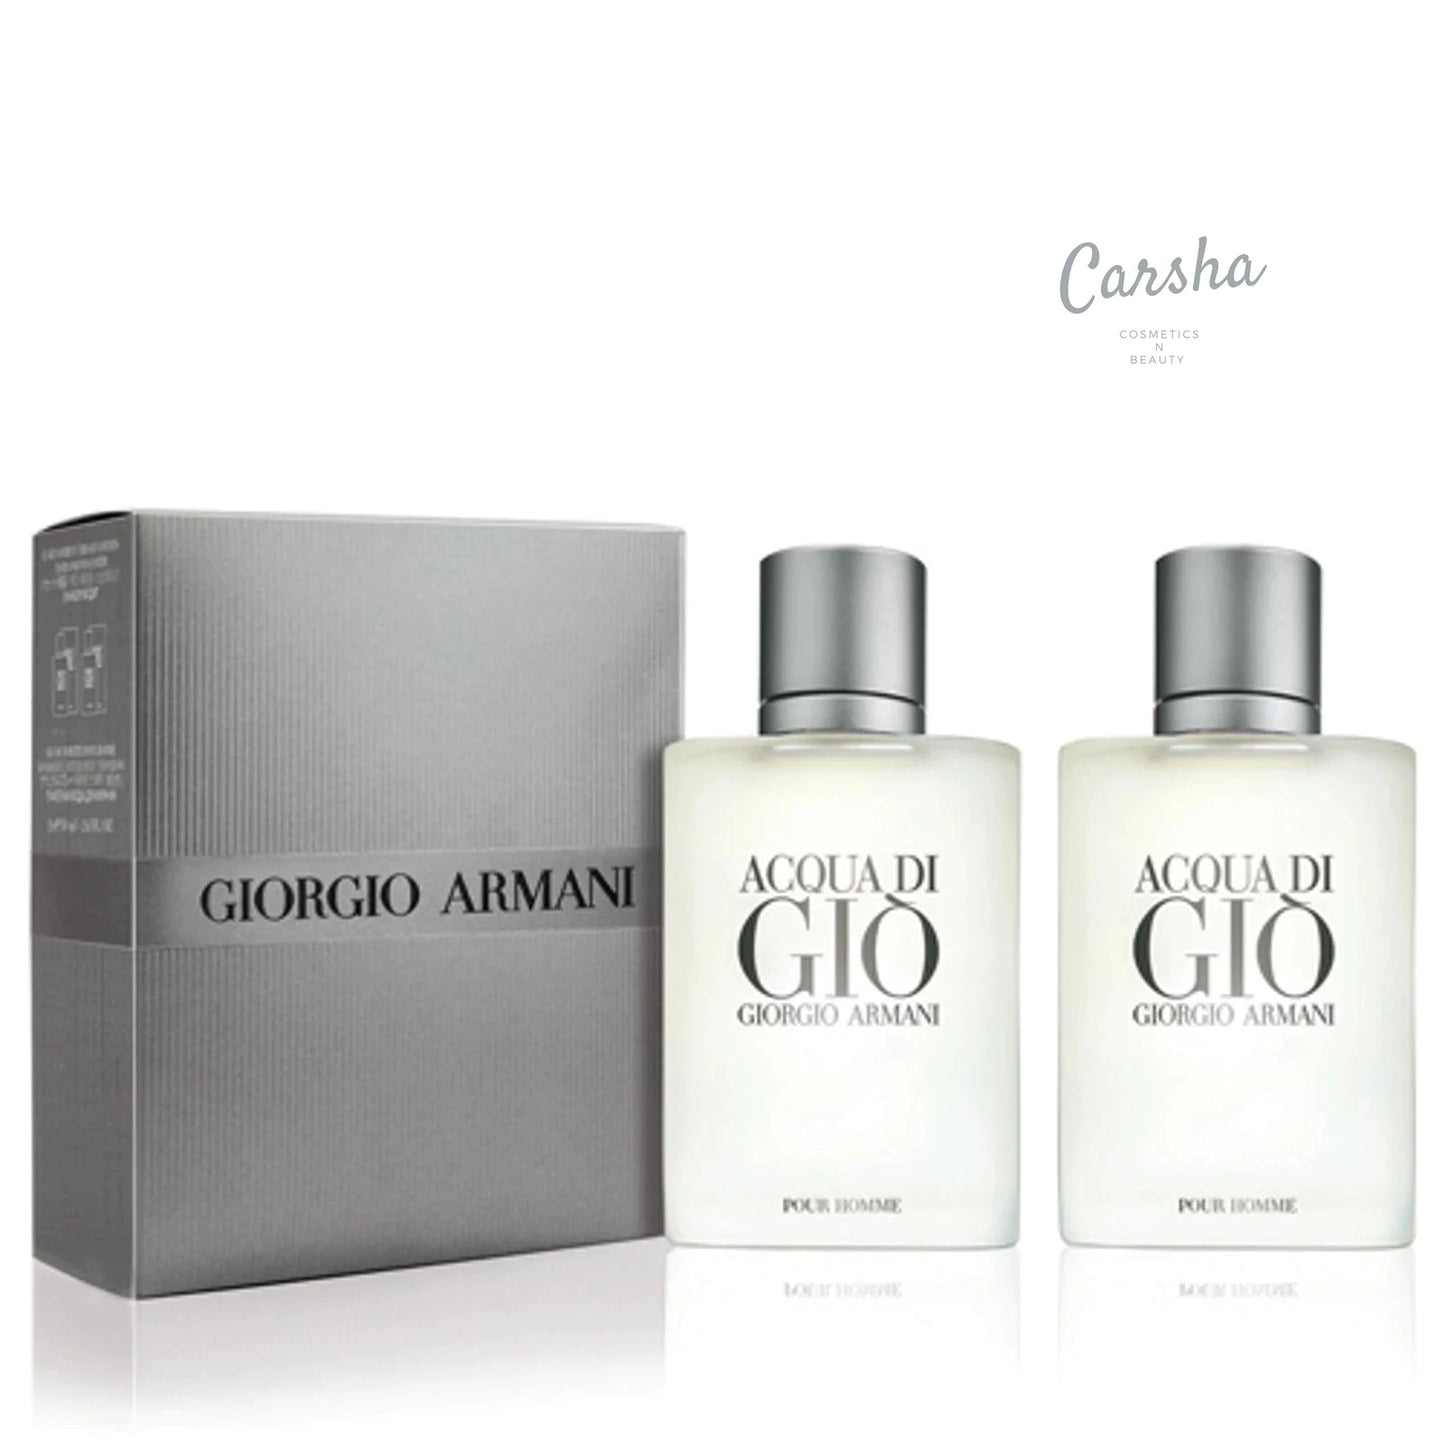 Giorgio Armani Acqua Di Gio Edt Duo 30ml*2 | Carsha